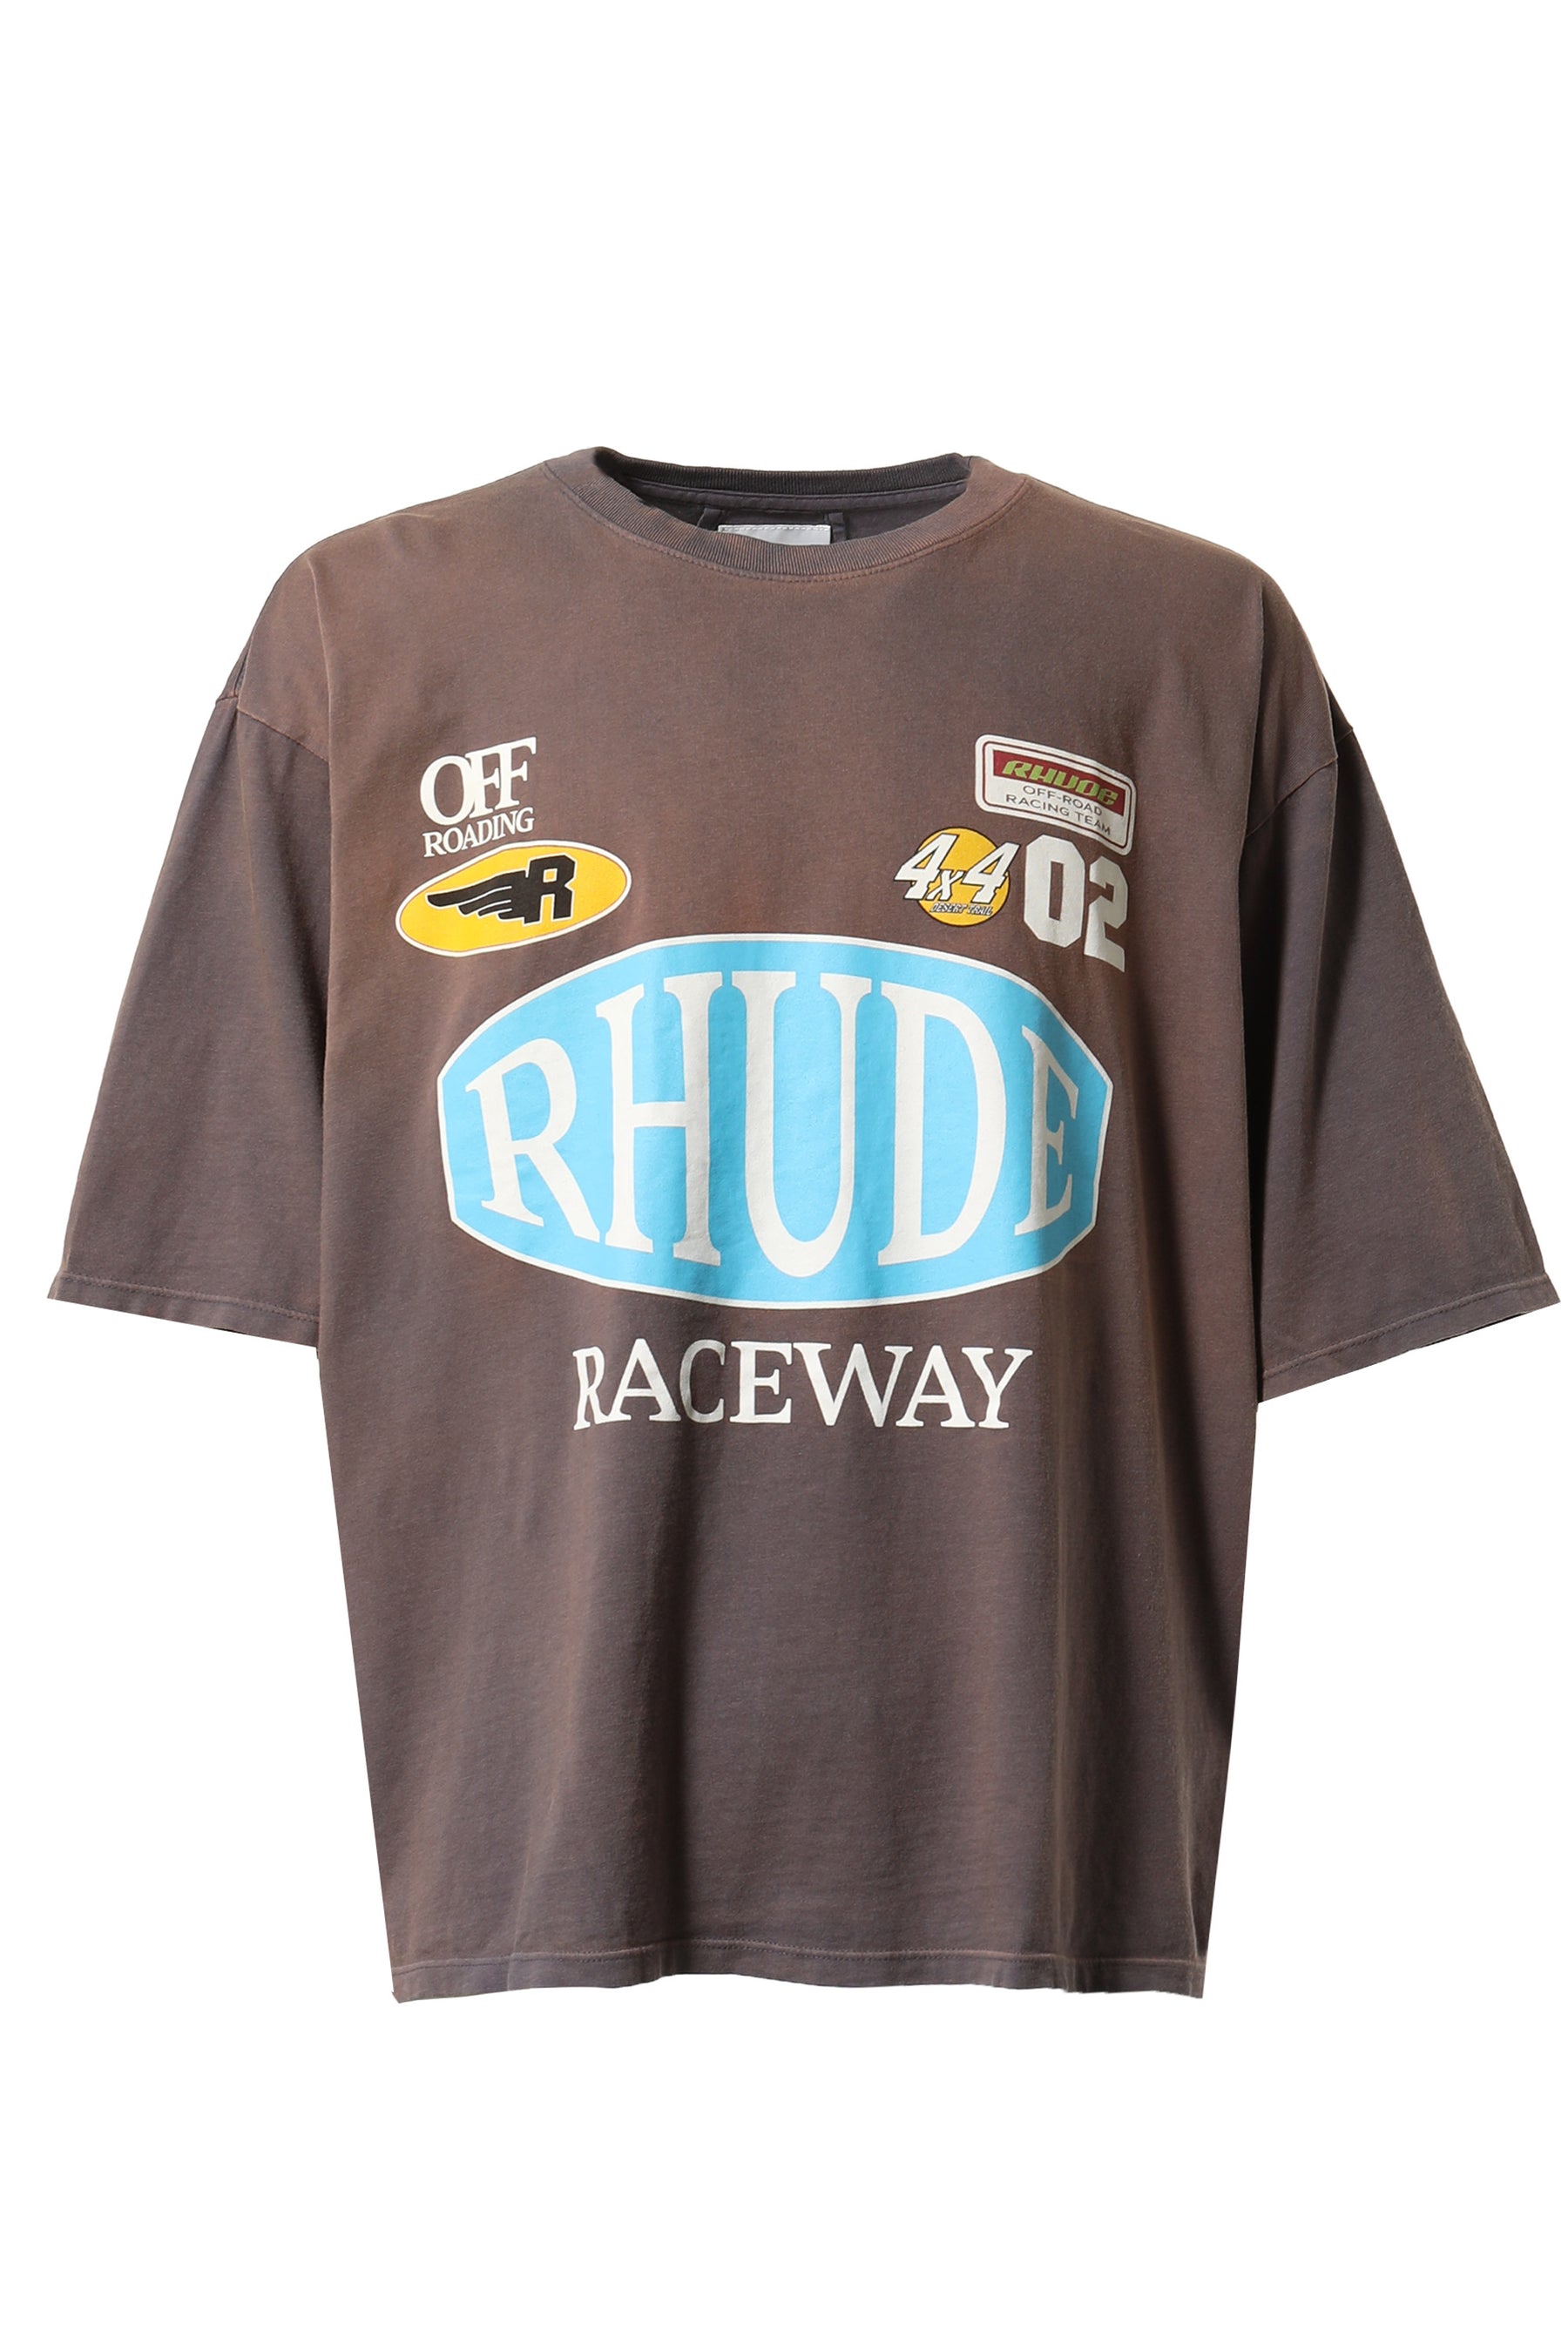 Rhude ルード FW23 RACEWAY TEE V,GRY -NUBIAN